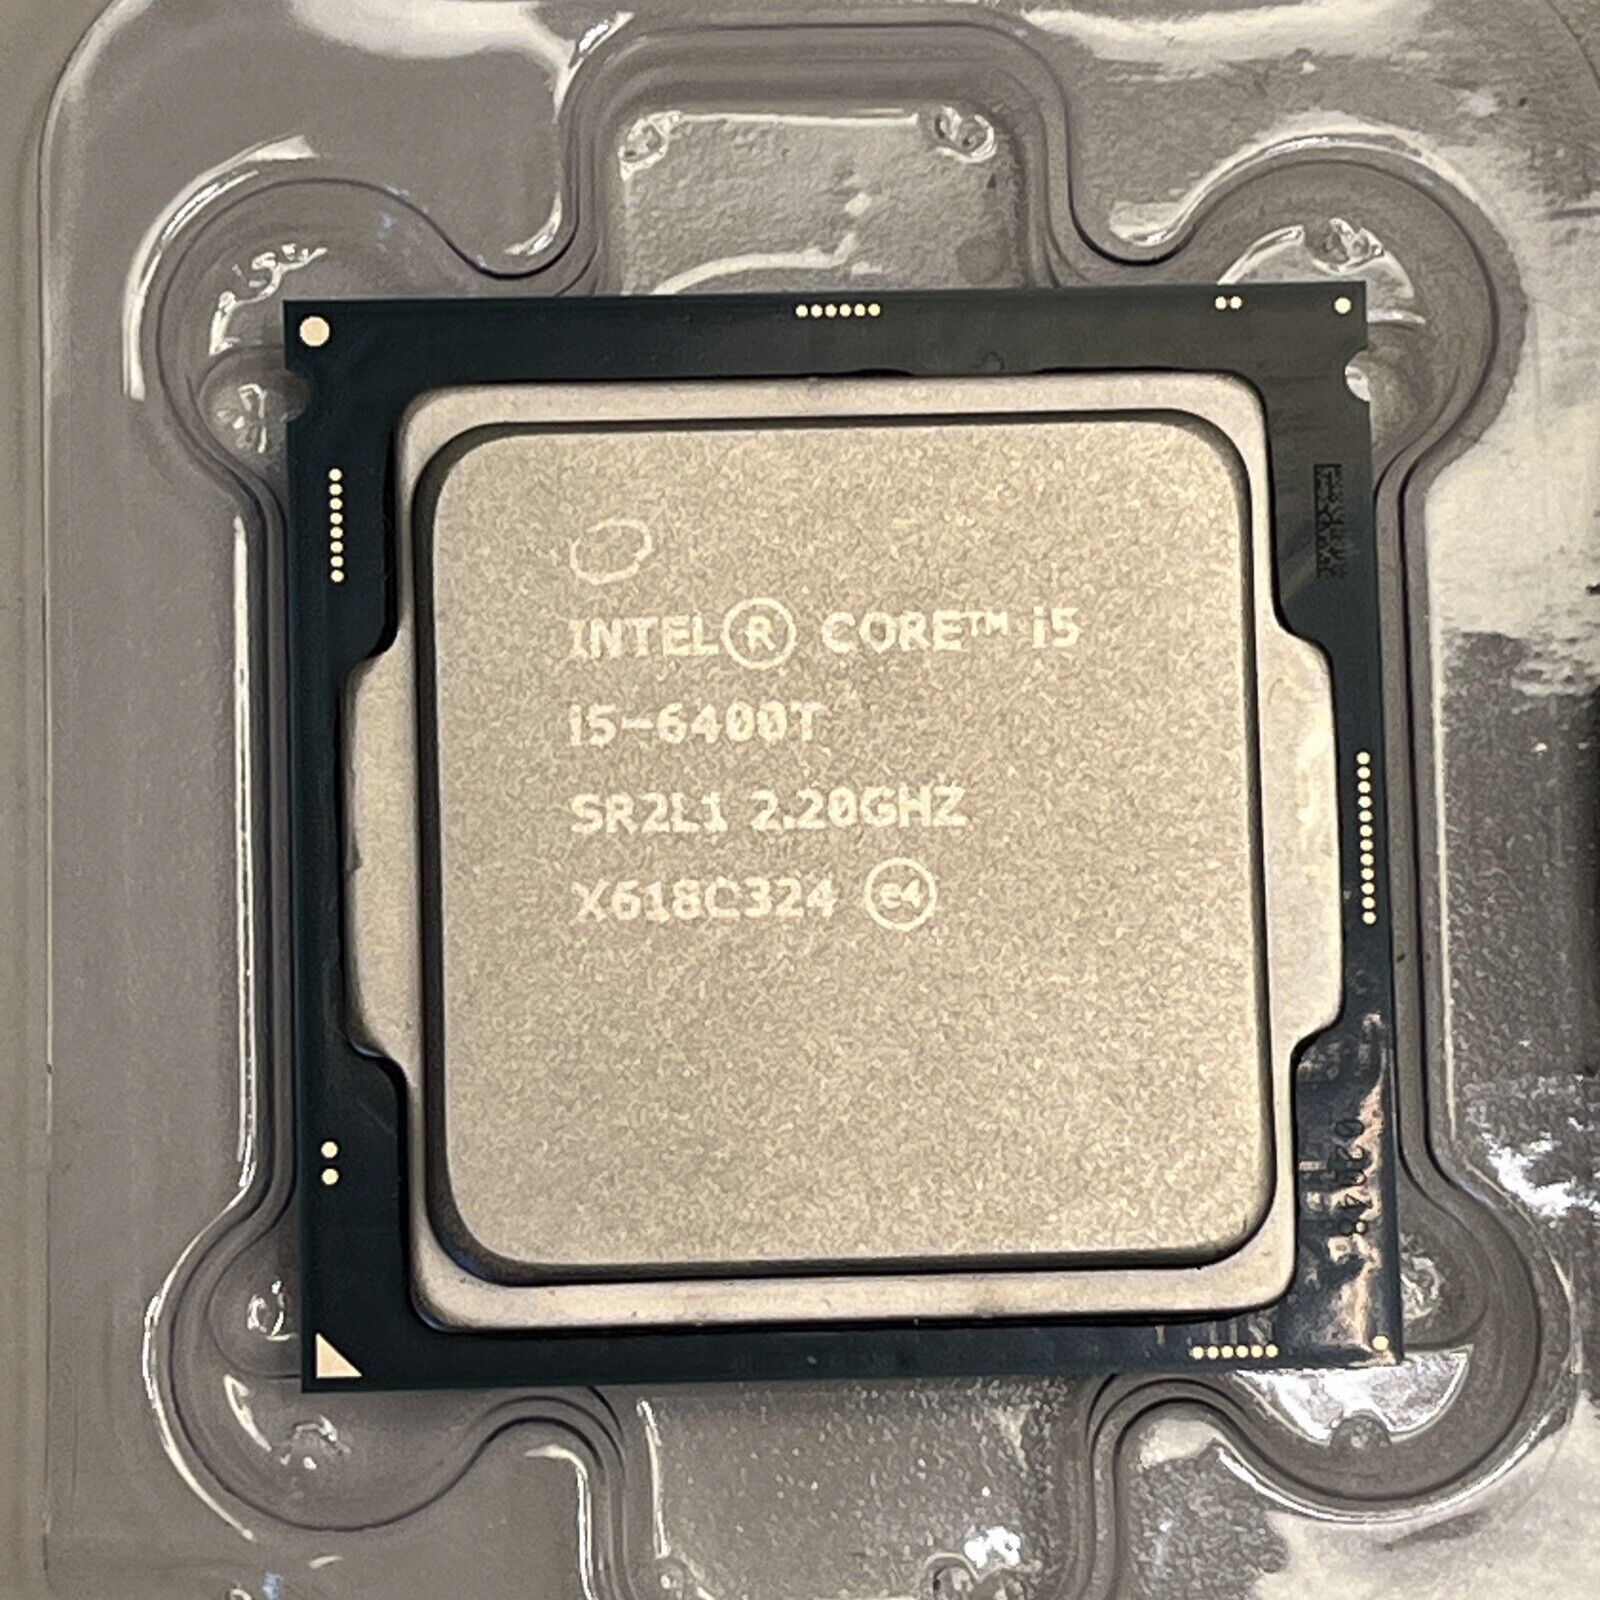 Intel Core i5-6400T SR2L1 - 2.80 GHz Quad-CoreProcessor LGA1151